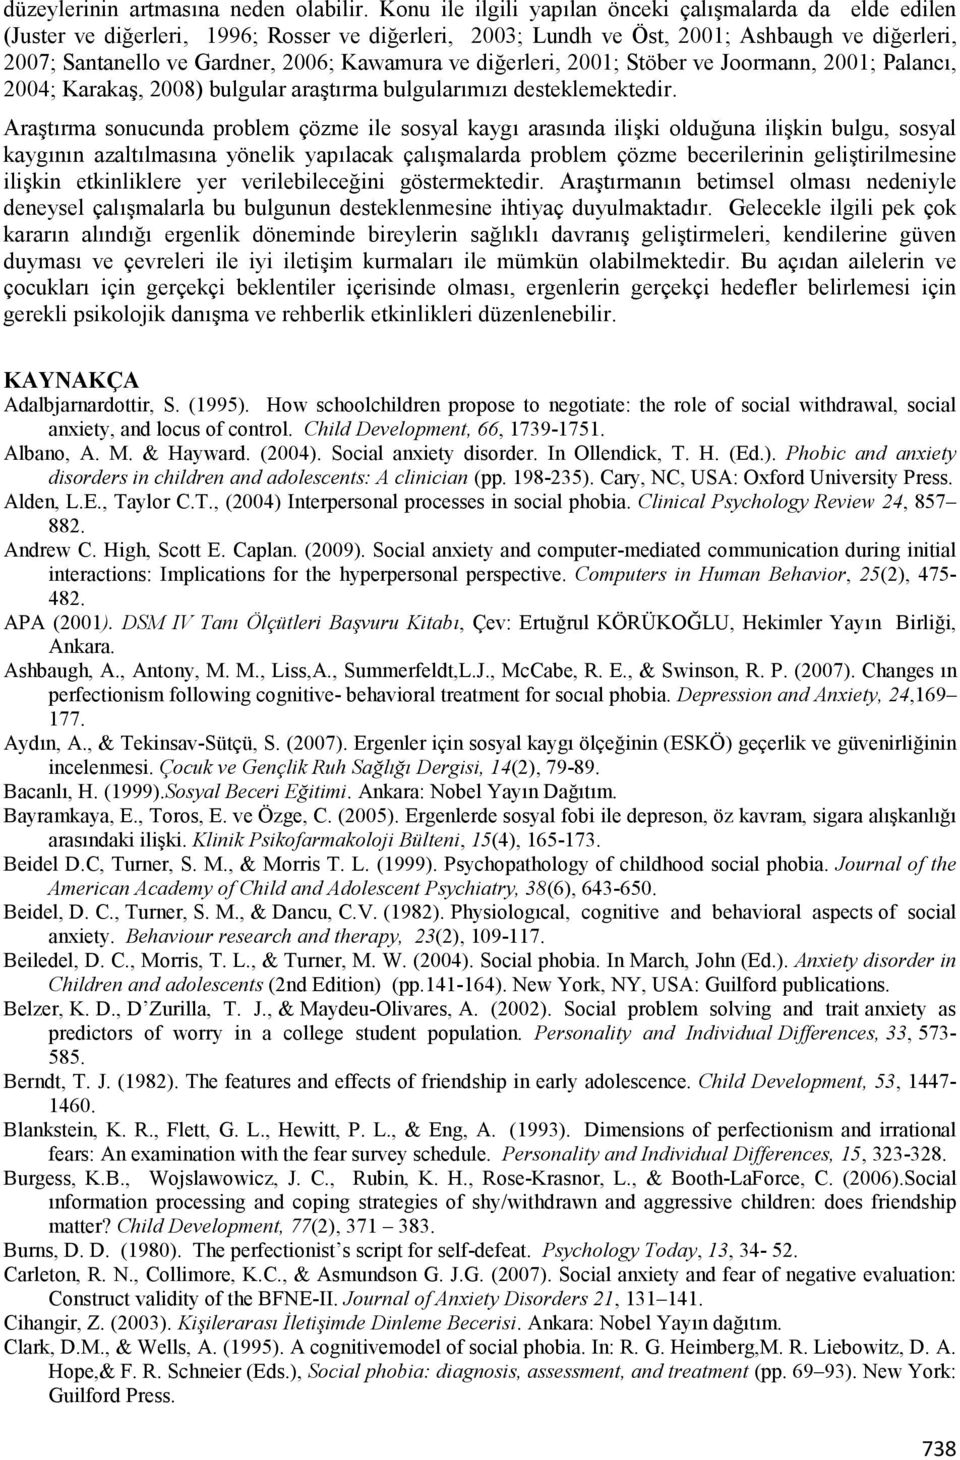 Kawamura ve diherleri, 2001; Stöber ve Joormann, 2001; Palanc:, 2004; KarakaB, 2008) bulgular arabt:rma bulgular:m:z: desteklemektedir.